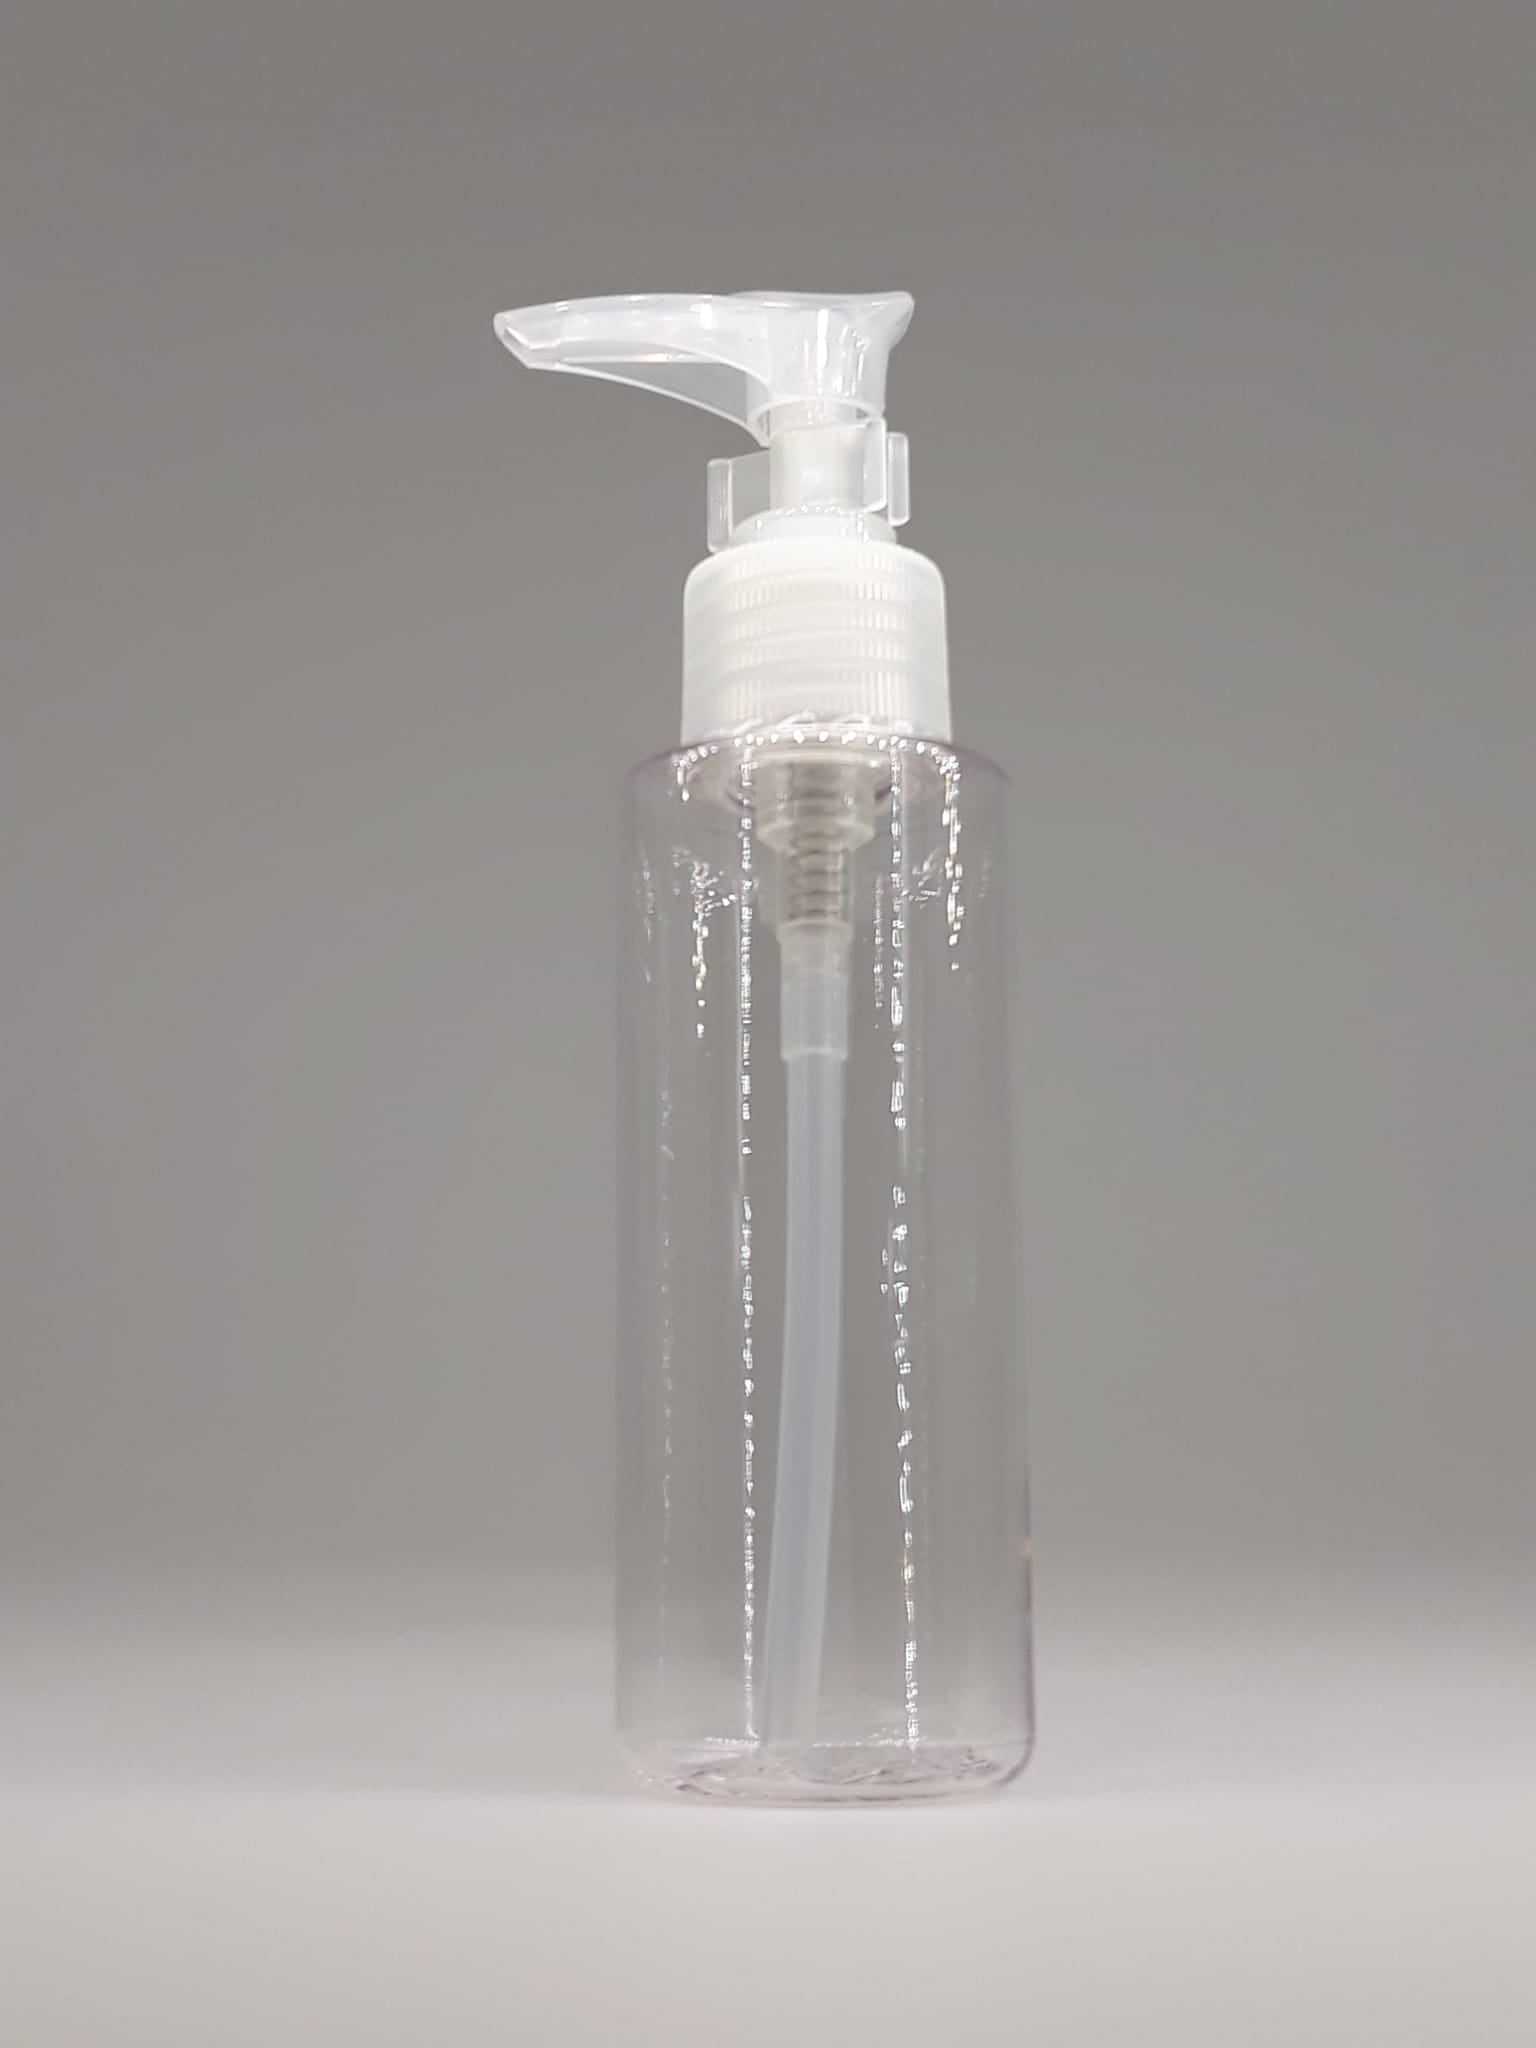 Naxos Pump Bottle 100ml 2.4 x 11.6 x 3.9cm | MJ01-100ML